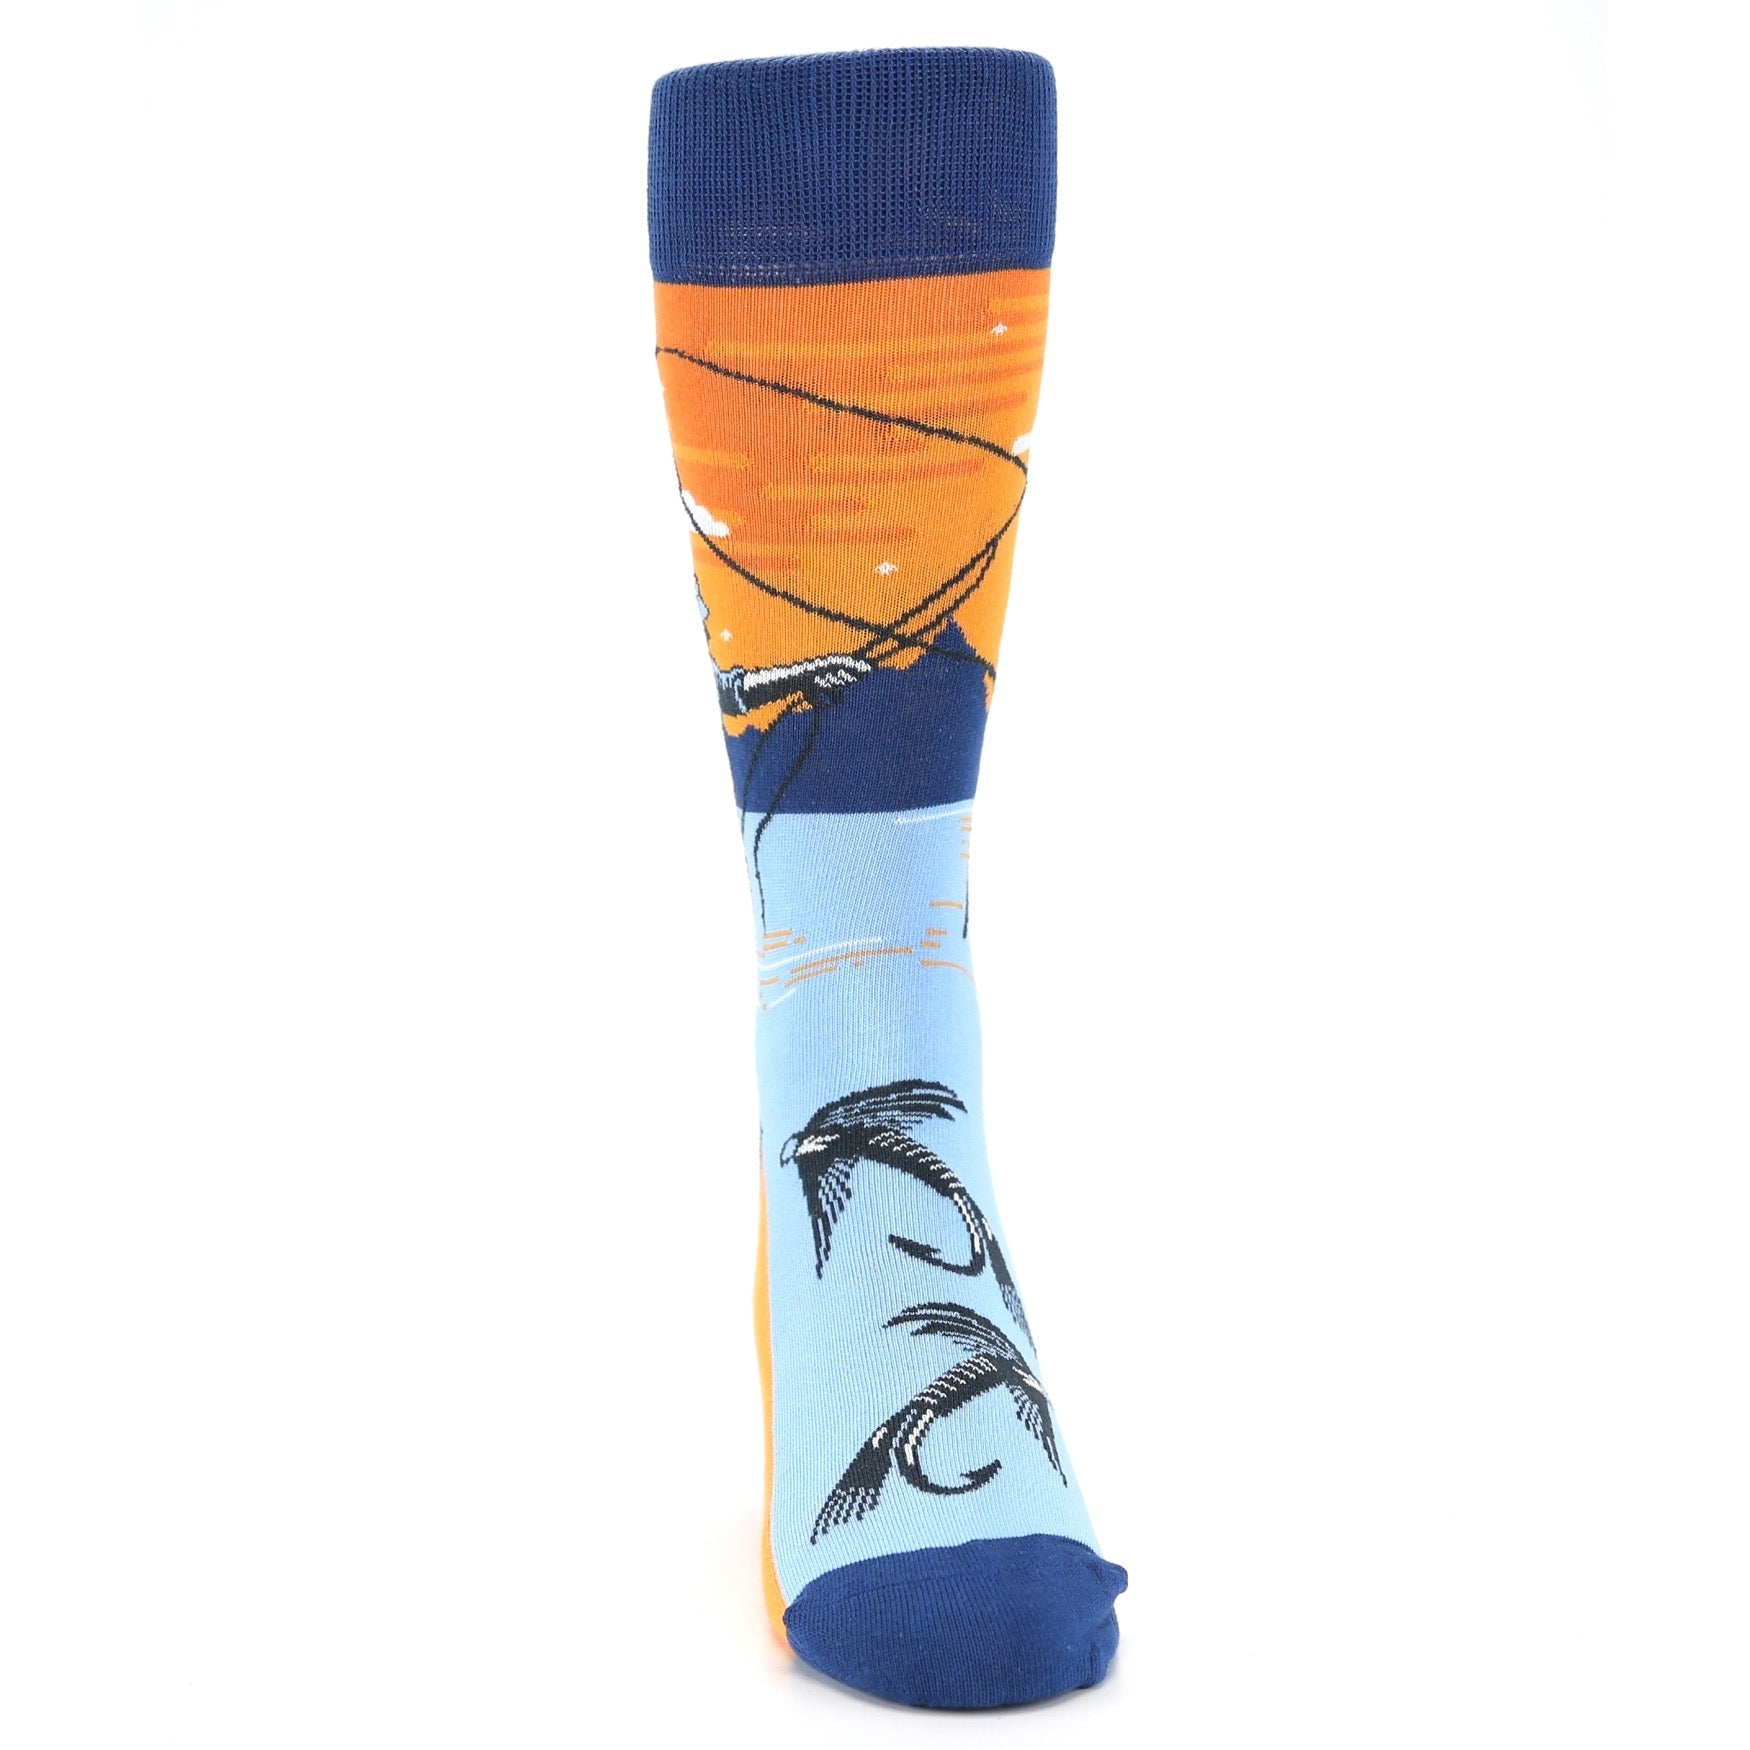 Fly Fishing Socks - Men's Novelty Dress Socks U.S. Men's Shoe Sizes 13-16